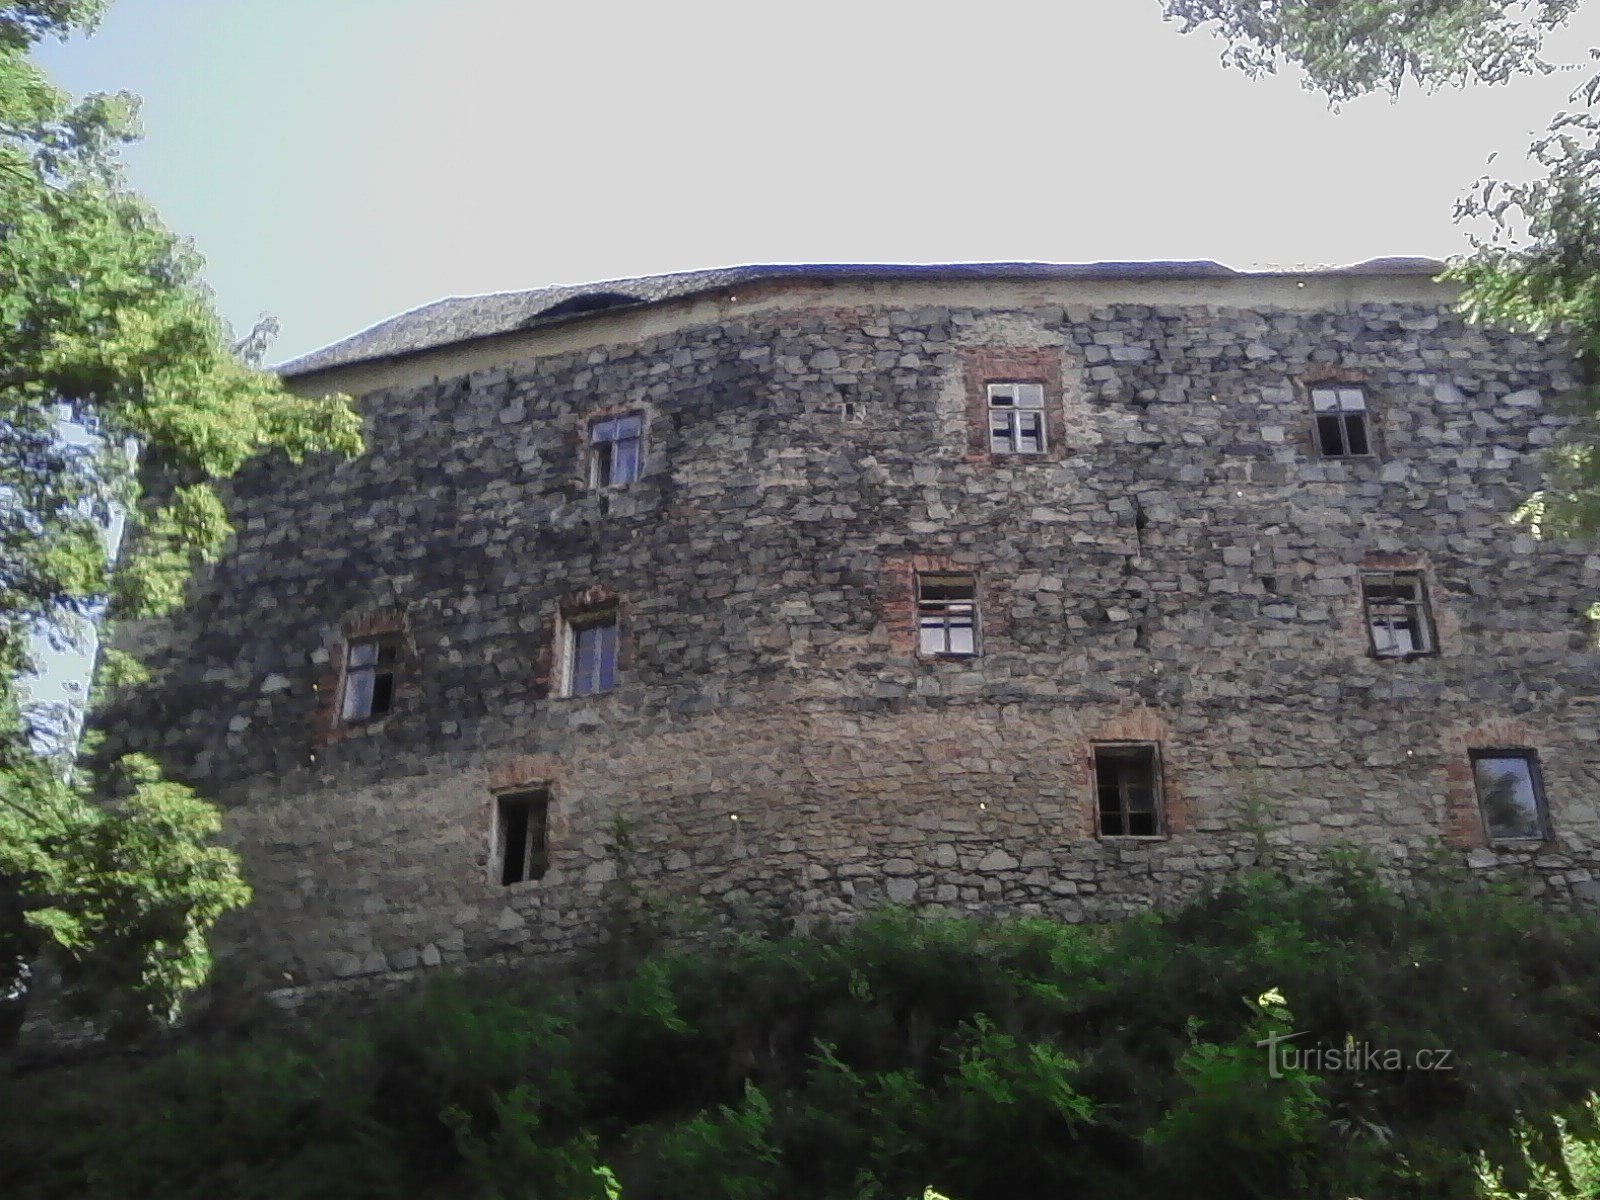 1. Wolkenfort. Middeleeuws fort uit de 14e eeuw. met paleisversterkingen, het staat op een heuvel